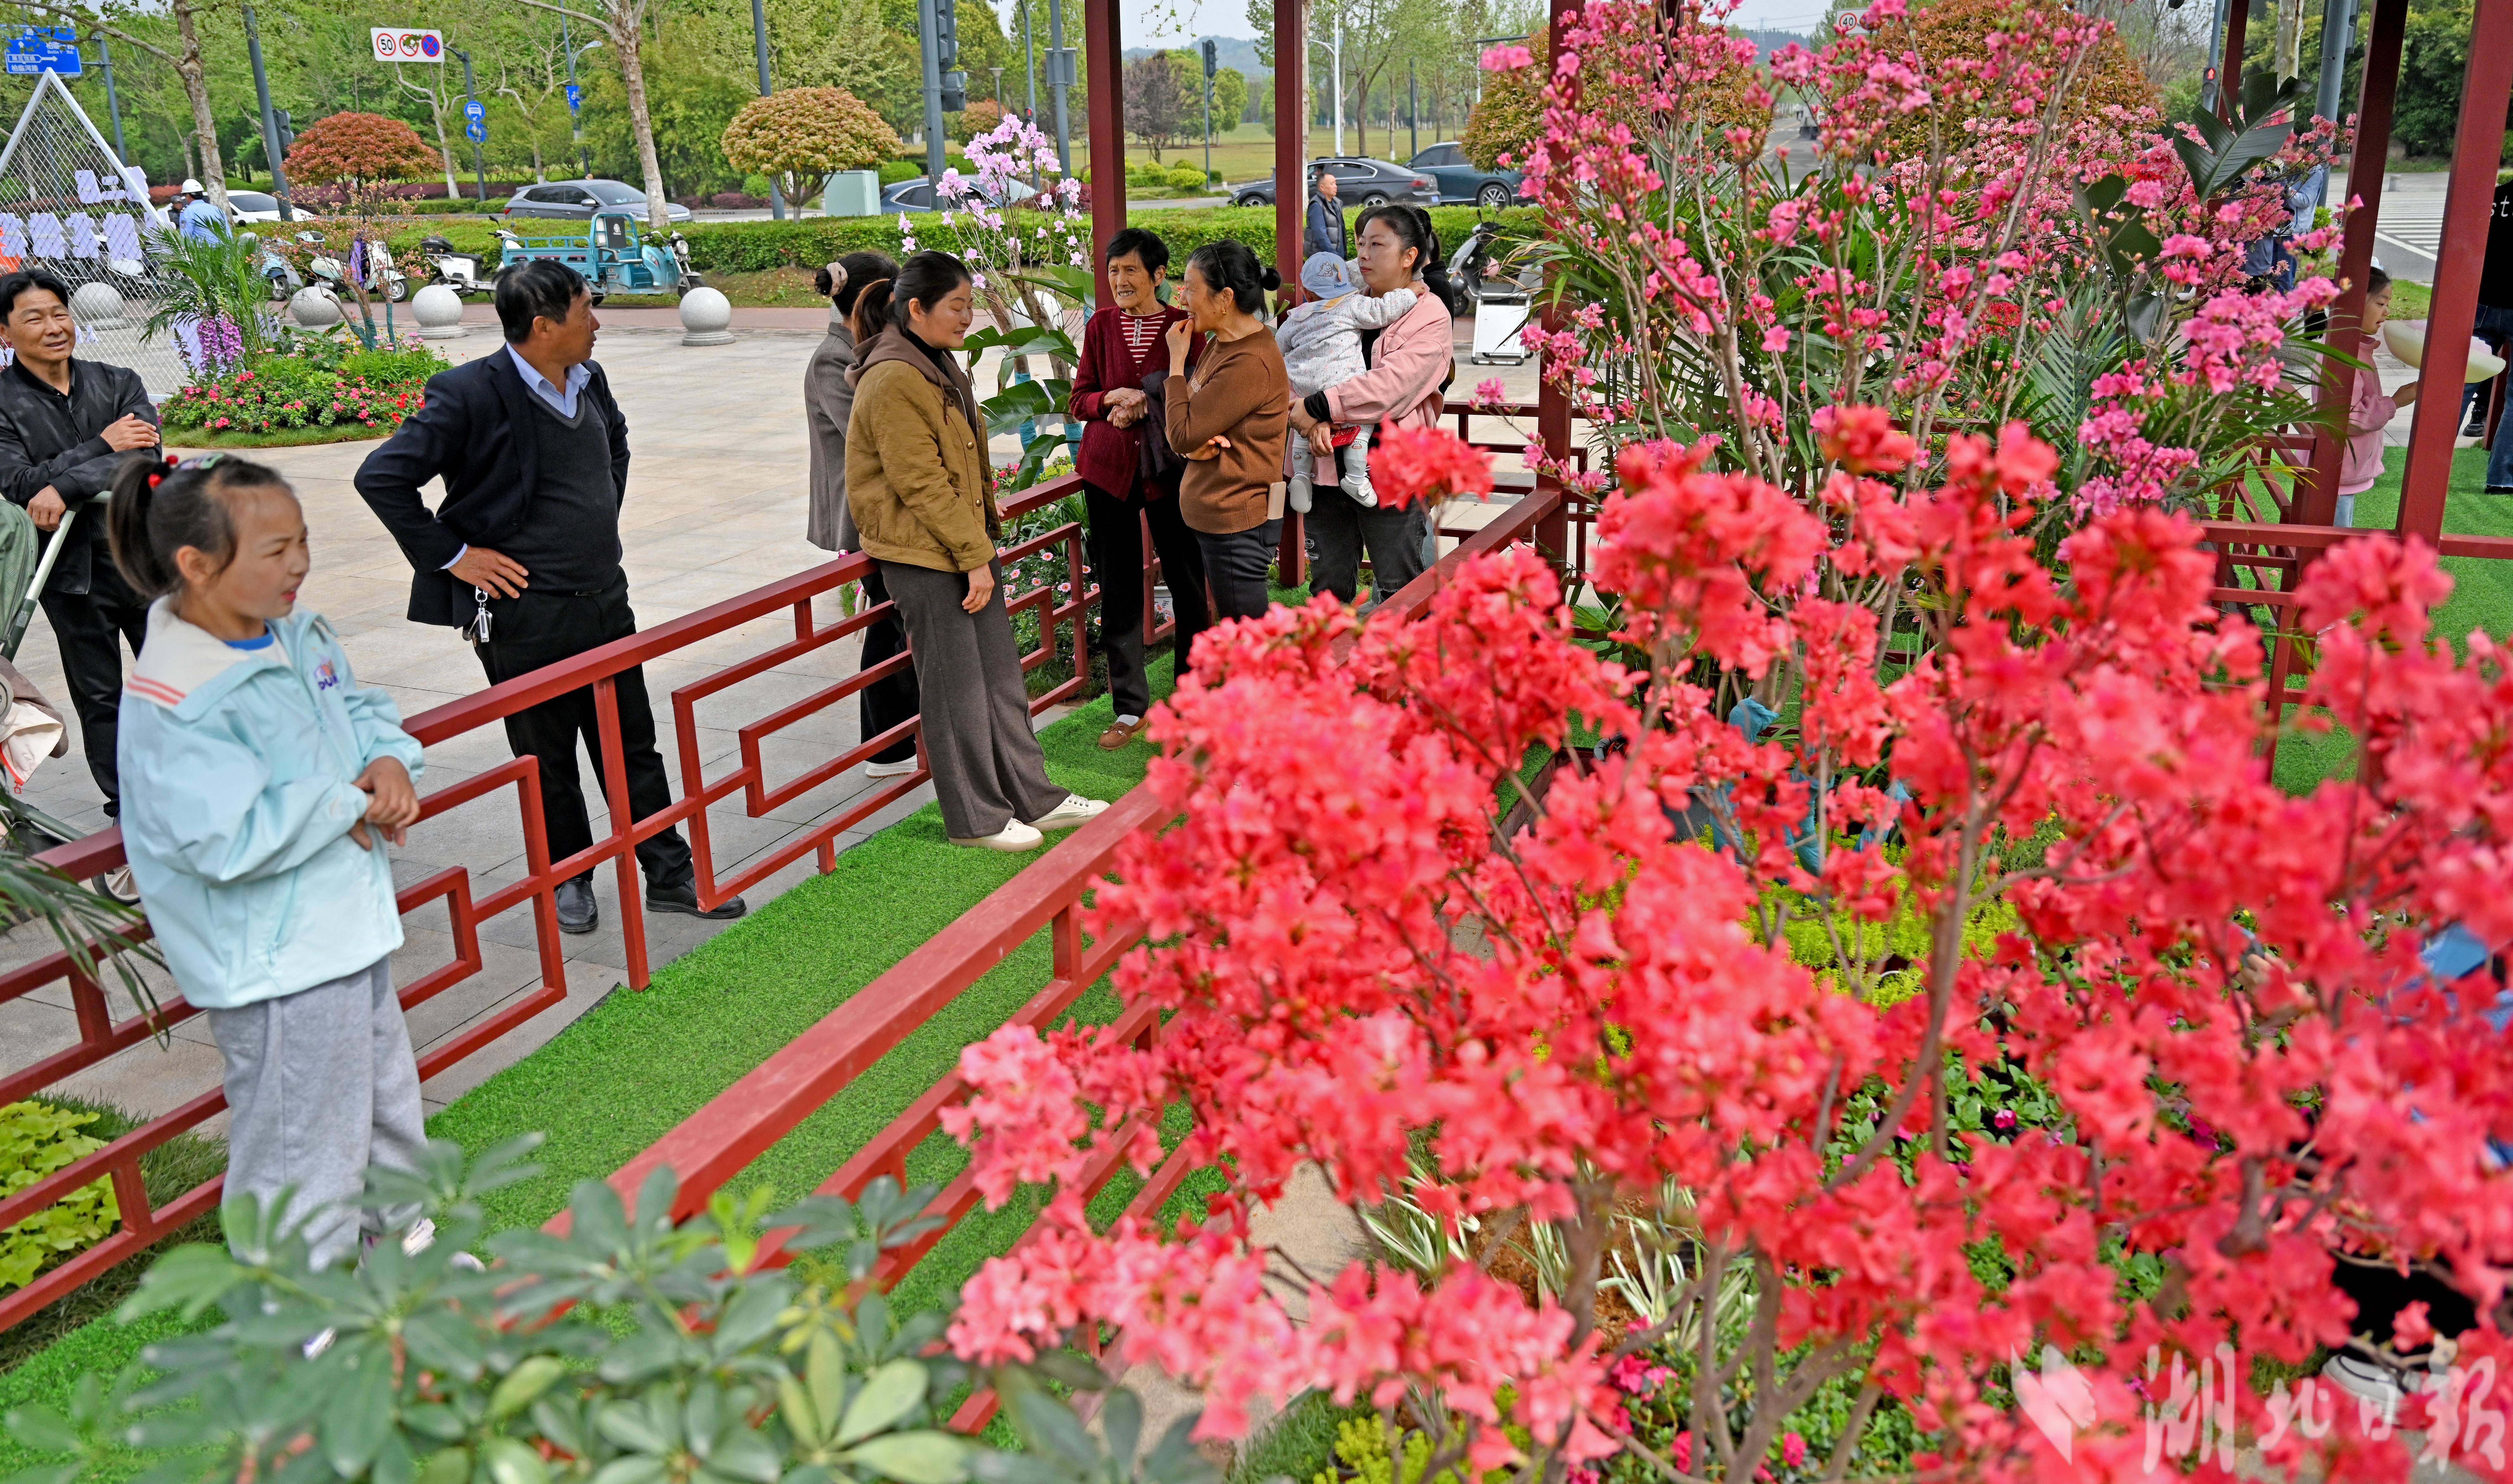 宜昌濕地公園辦起名貴杜鵑花展